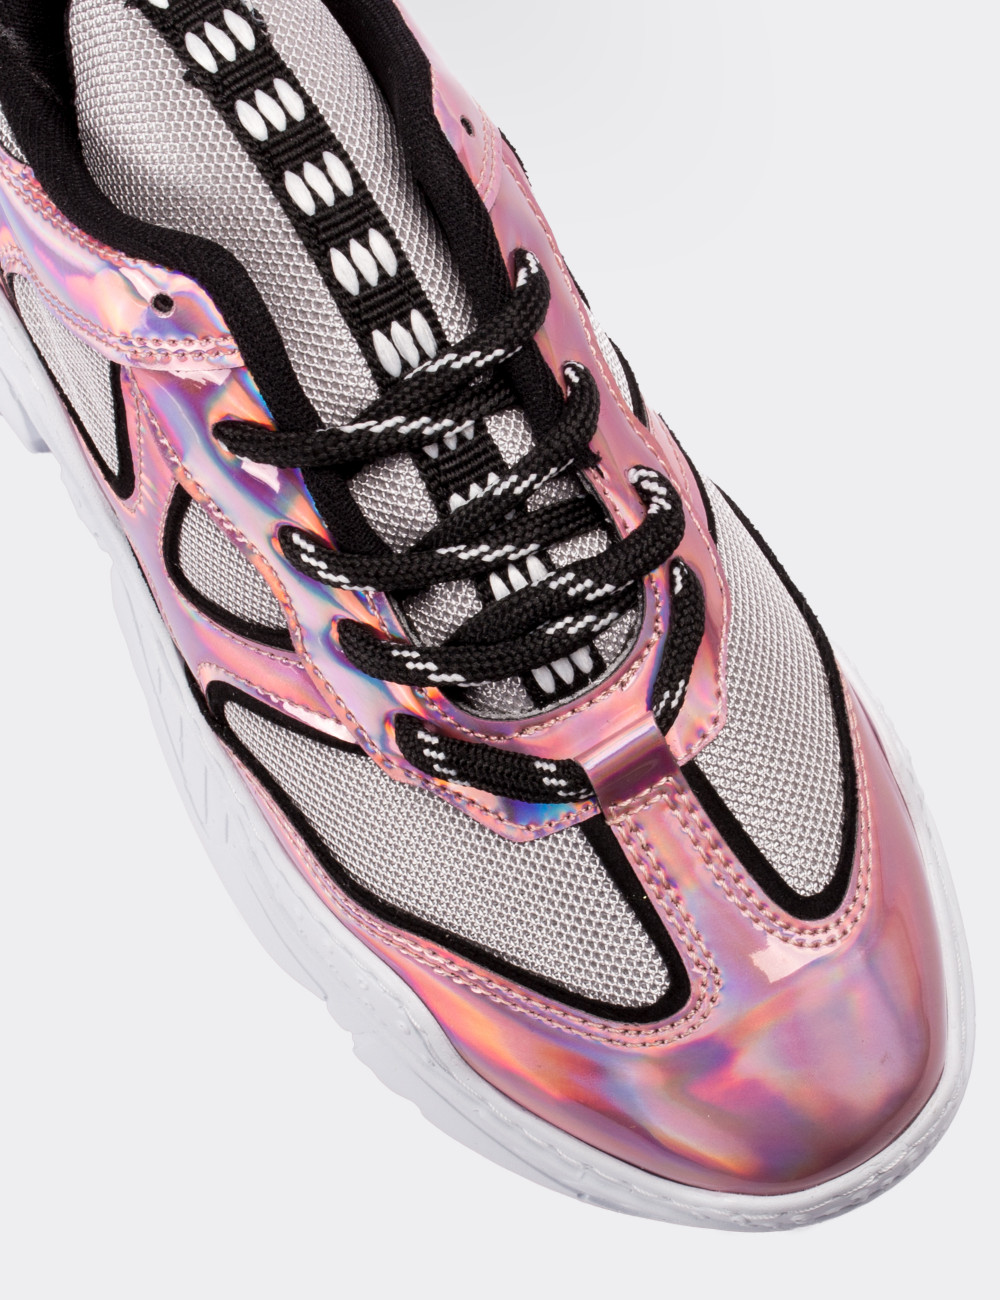 Pembe Hologramlı Sneaker Kadın Ayakkabı - 02021ZPMBT01